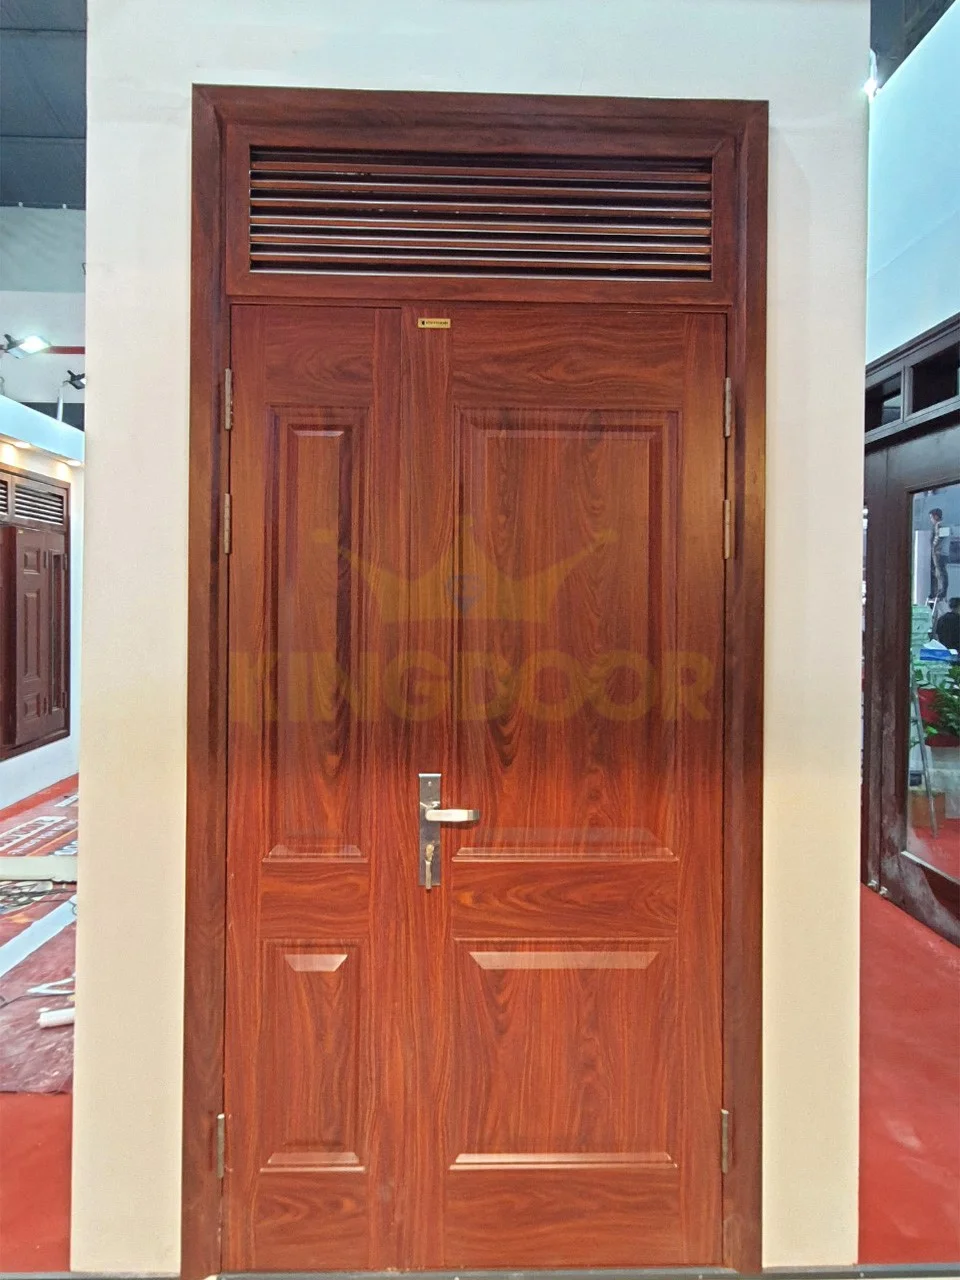 Báo giá Cửa thép vân gỗ tại Đà Lạt – Cửa chính, cửa sổ Cua-thep-van-go-2-canh-tai-Da-Lat-2